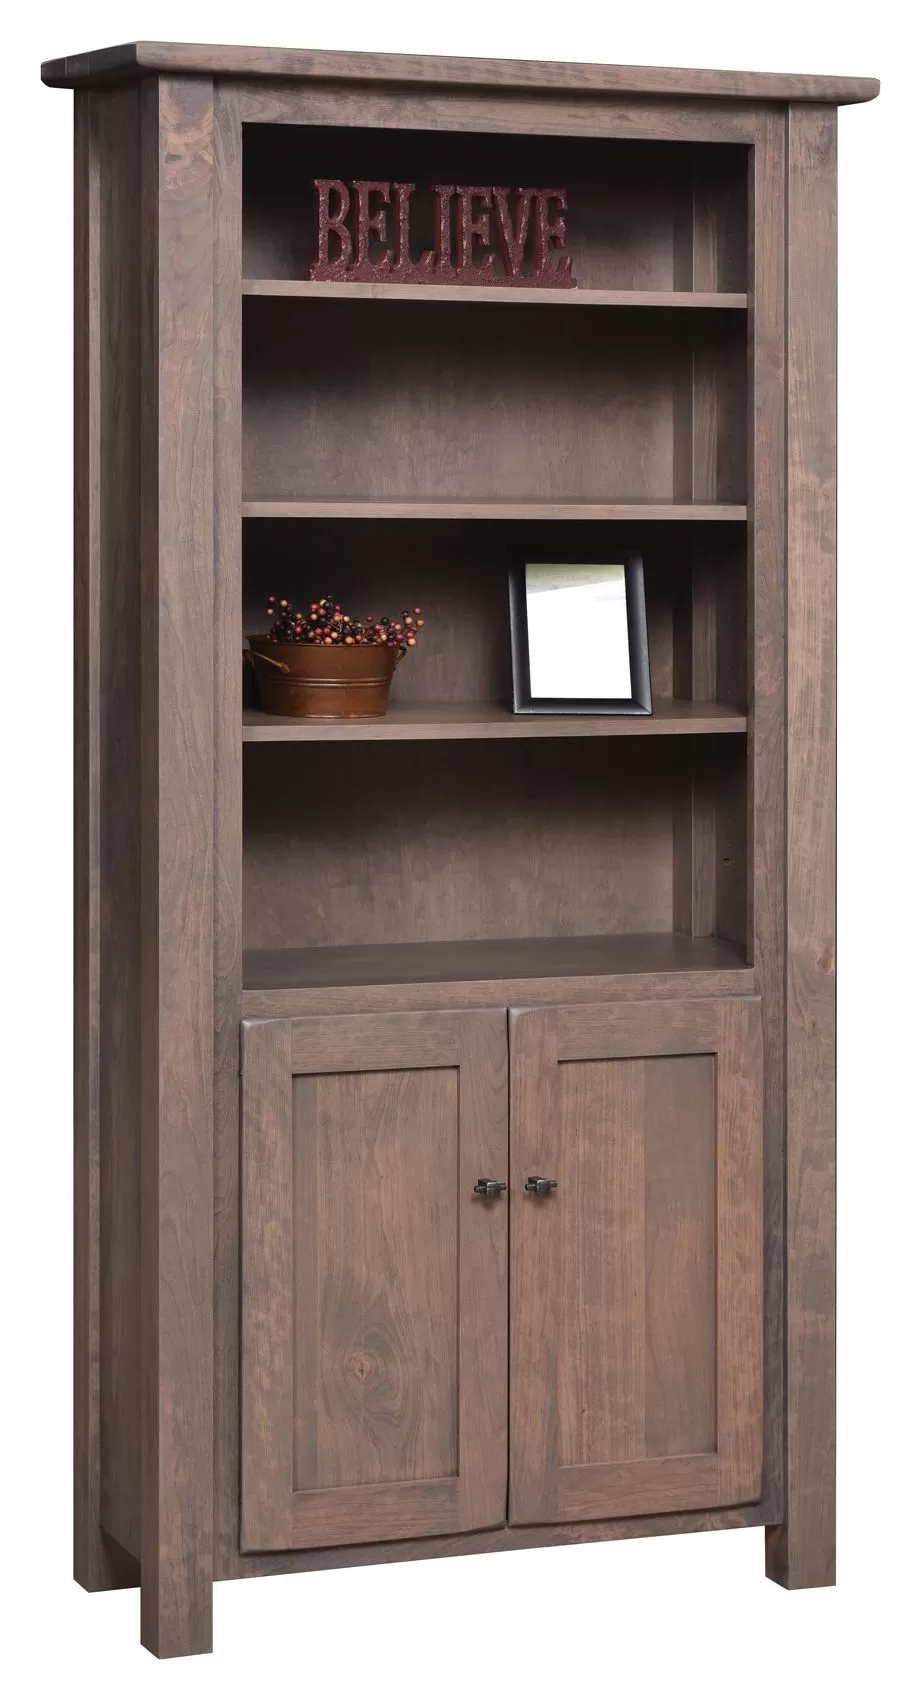 36" Barn Floor Bookcase with Doors